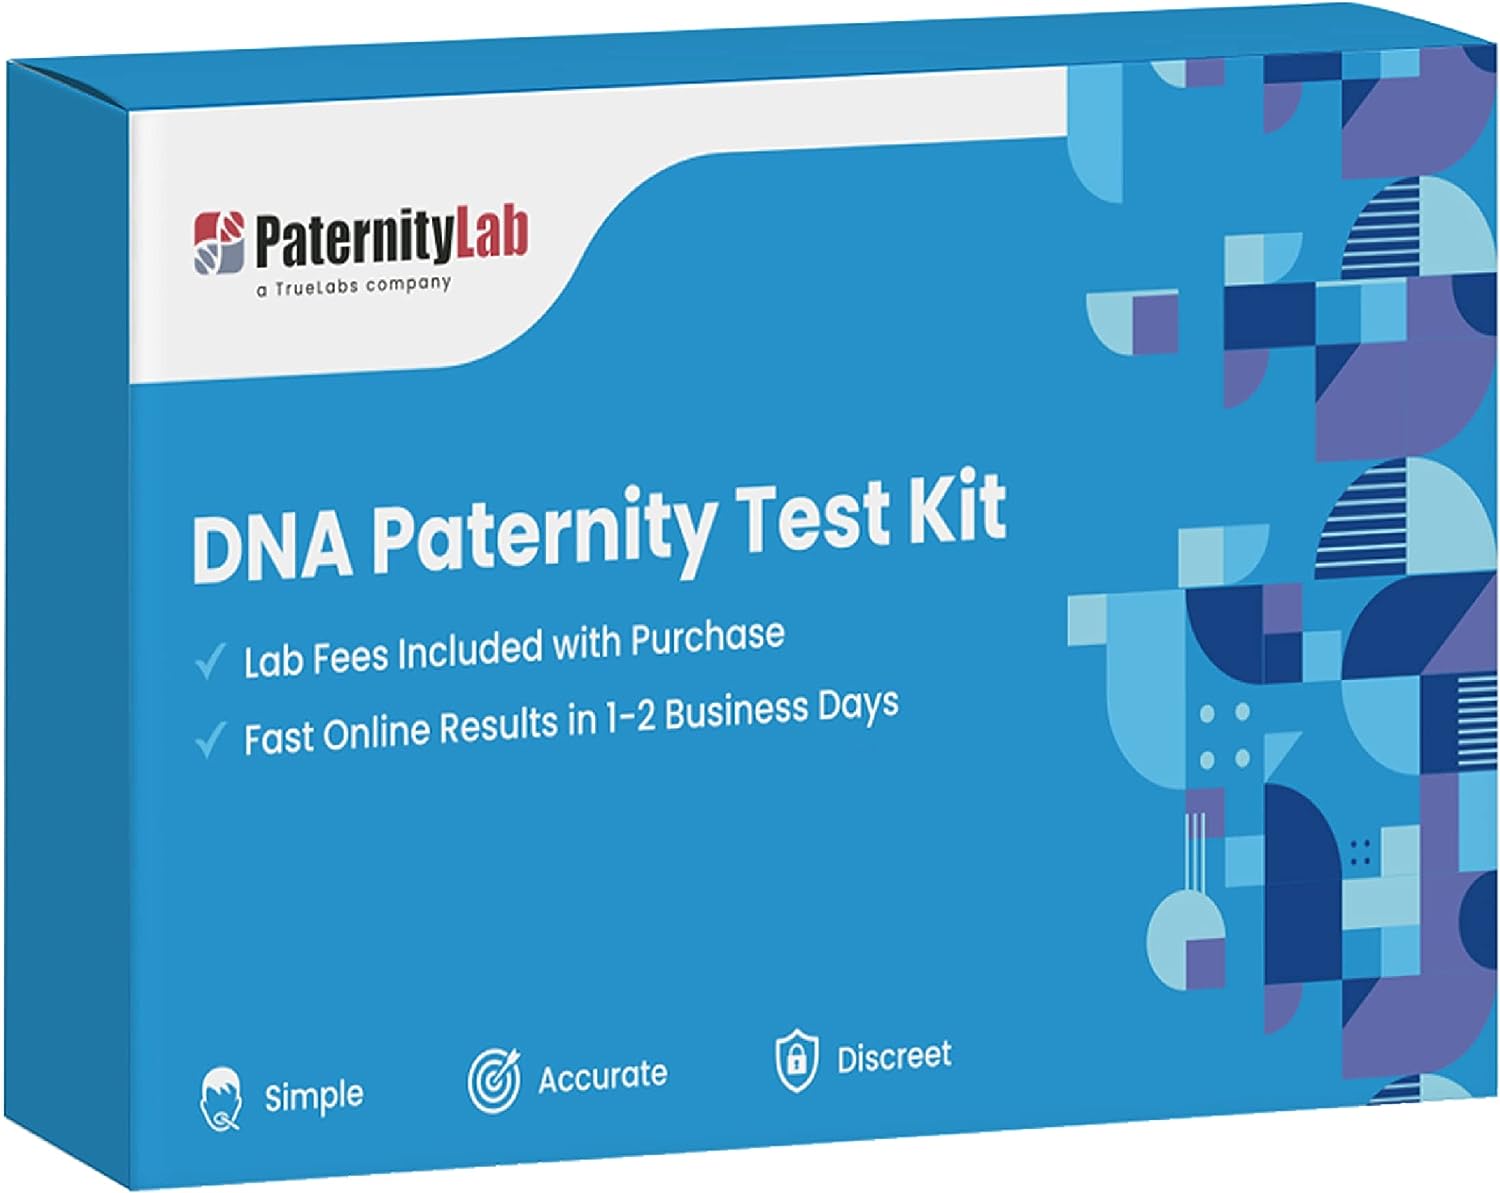 dna-paternity-test-kit-